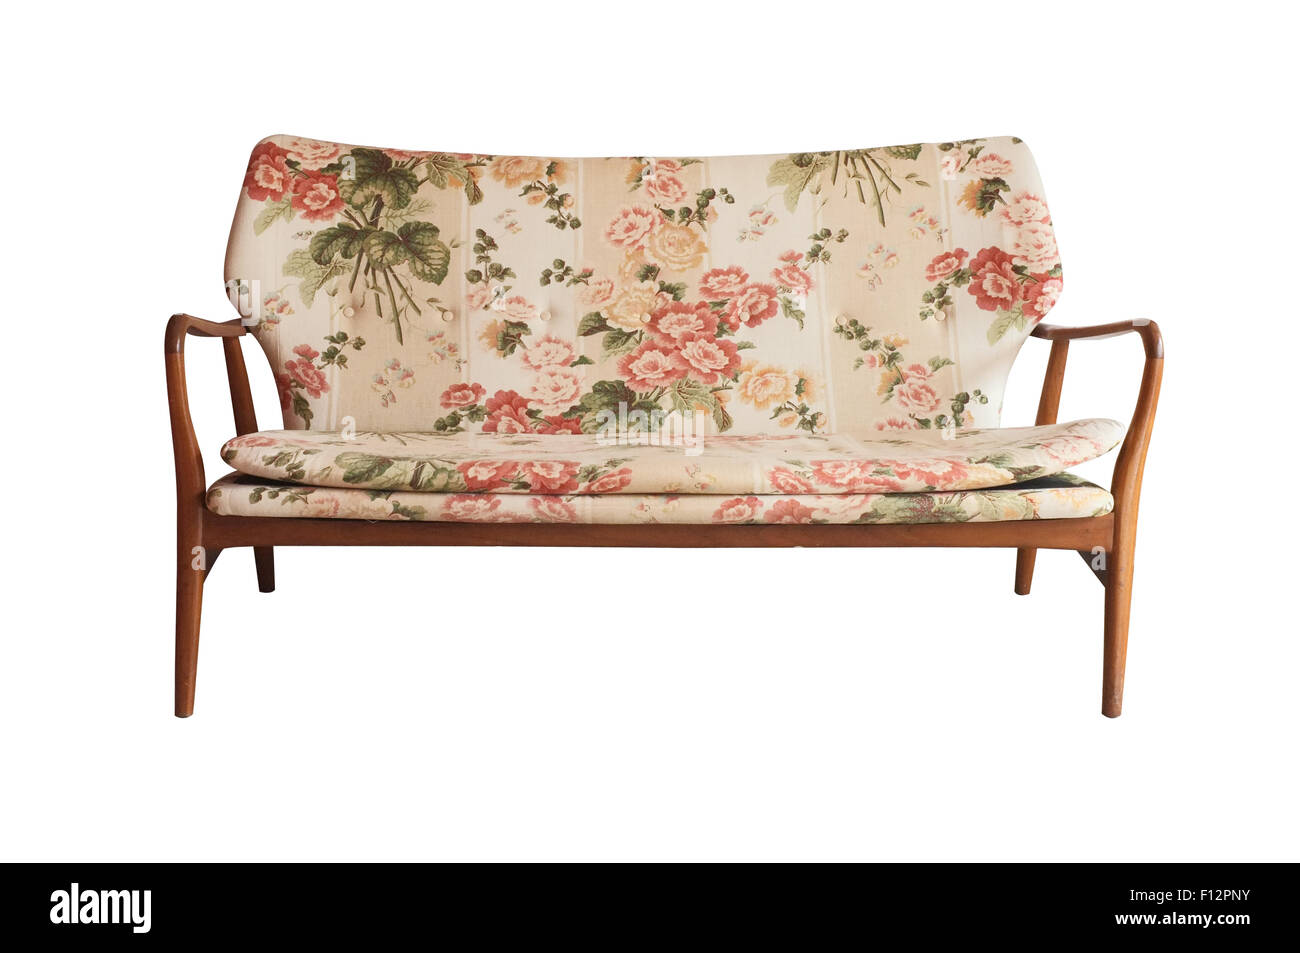 Sofá de madera tapizados en tela floral impreso, vintage style Foto de stock